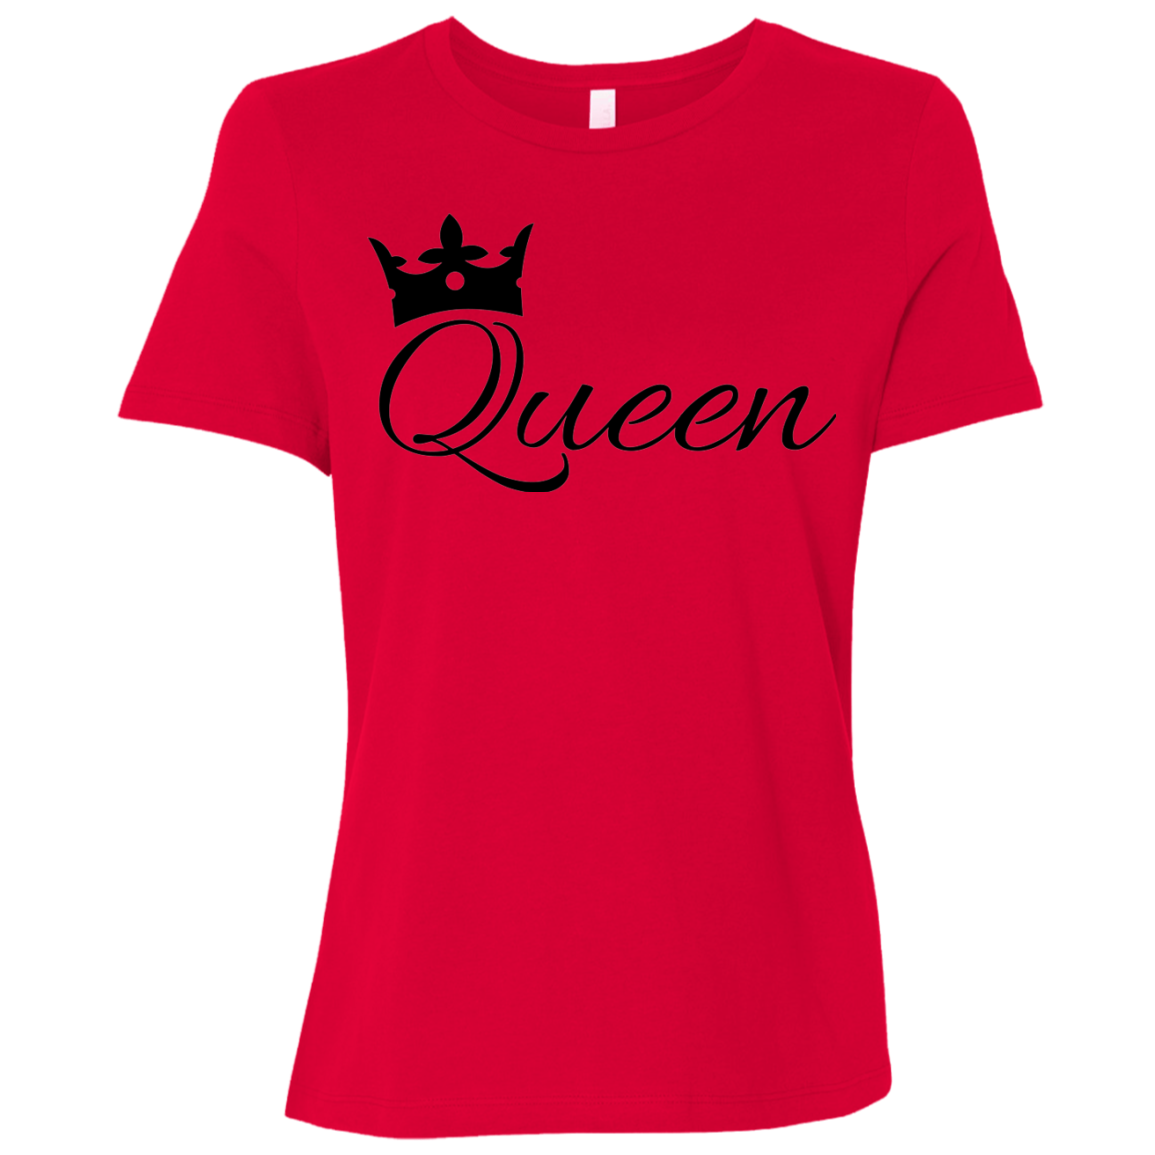 Beautiful Queen T-Shirt